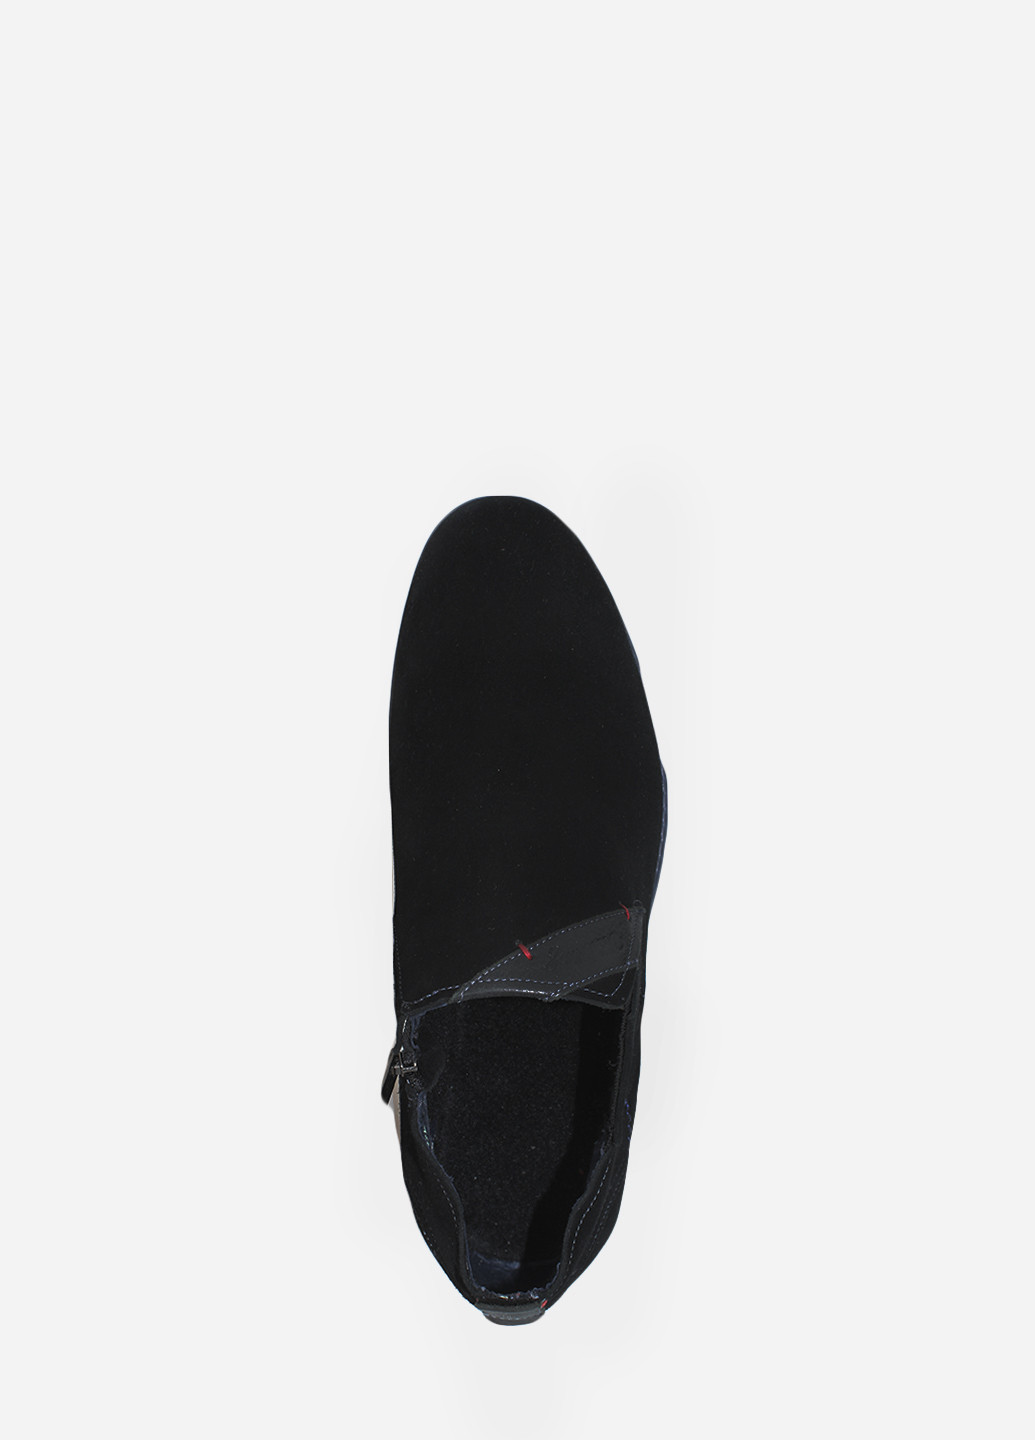 Черные осенние ботинки rv3515-03-11 черный Veber Design